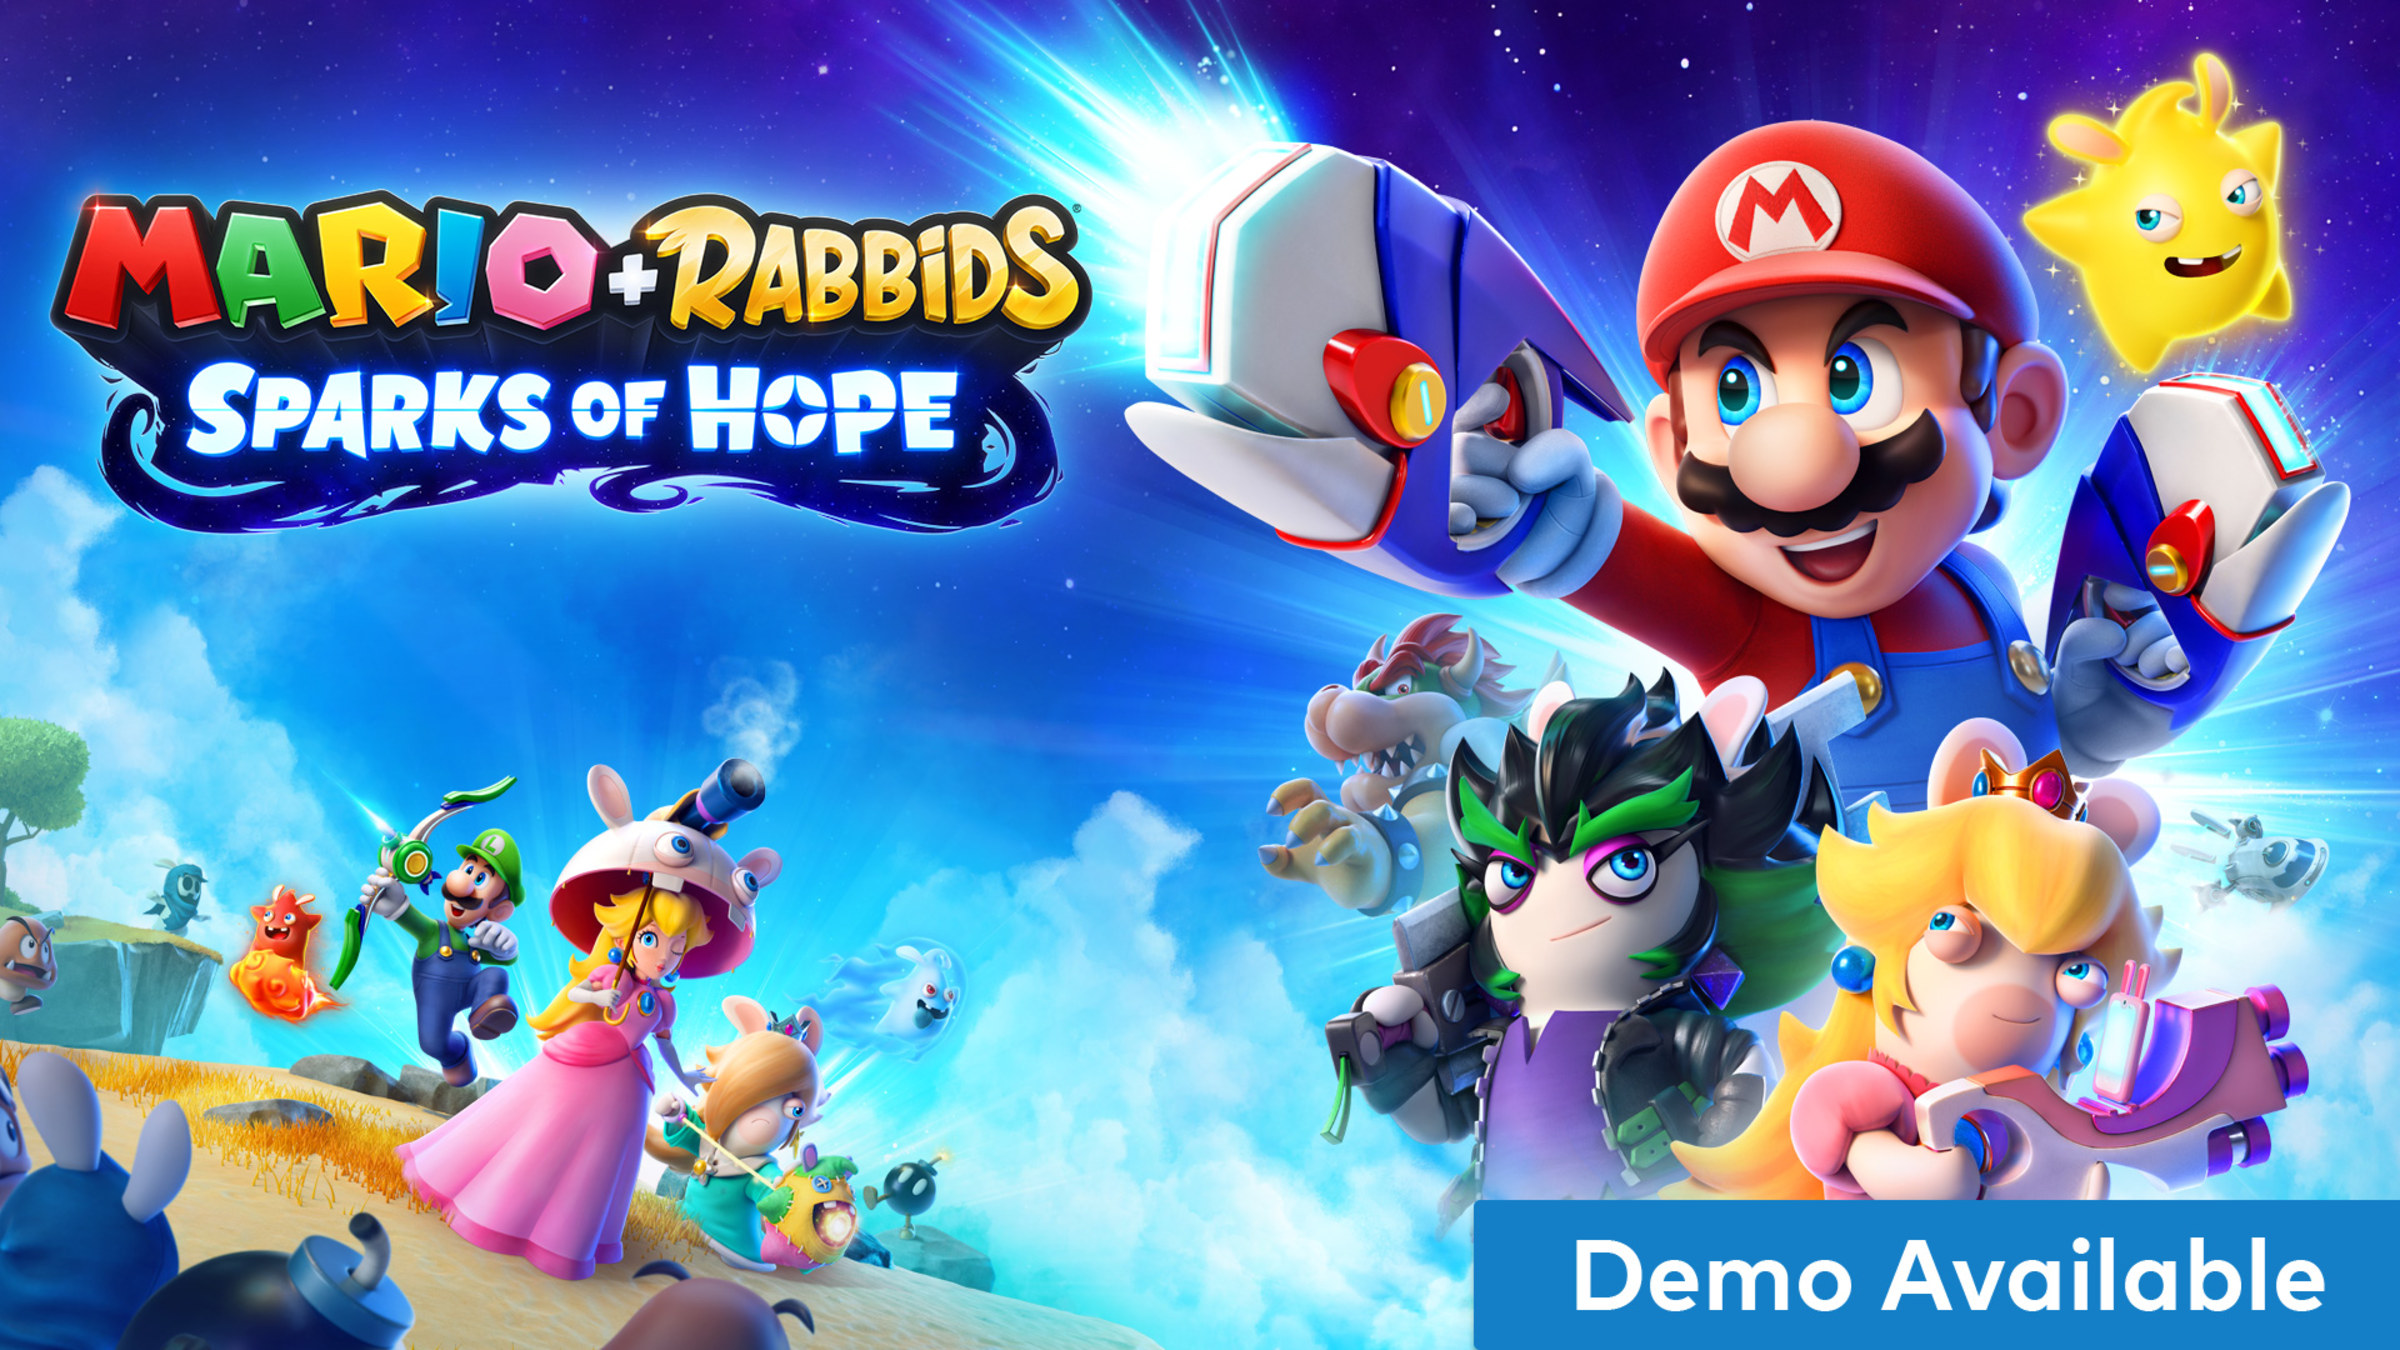 Mario + Rabbids Sparks of Hope (Nintendo Switch) Digital $30 - Nintendo Official Site $29.99